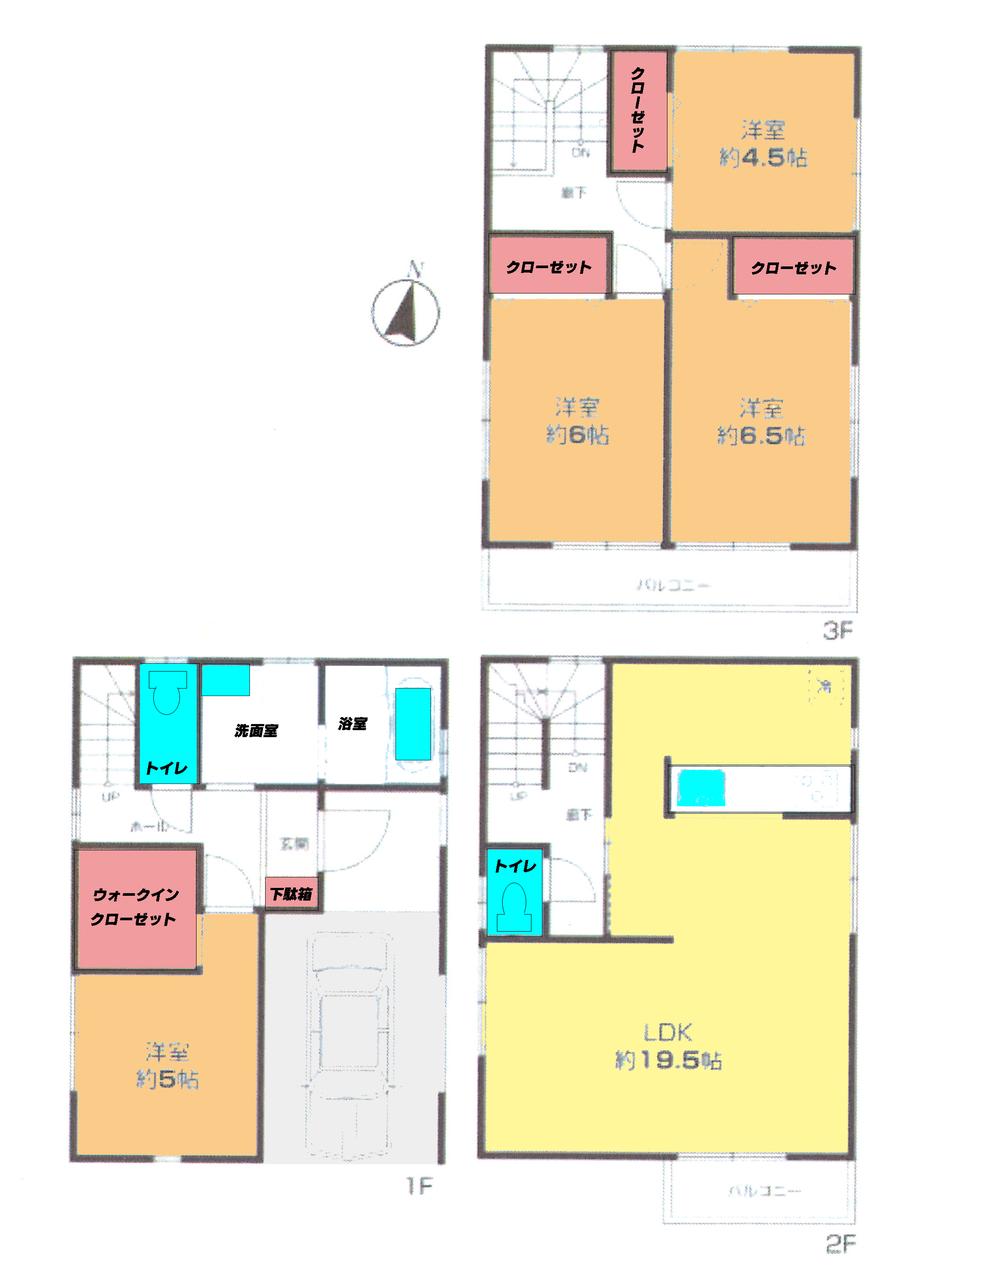 Floor plan. 24,800,000 yen, 4LDK, Land area 68.95 sq m , Building area 116.64 sq m floor plan